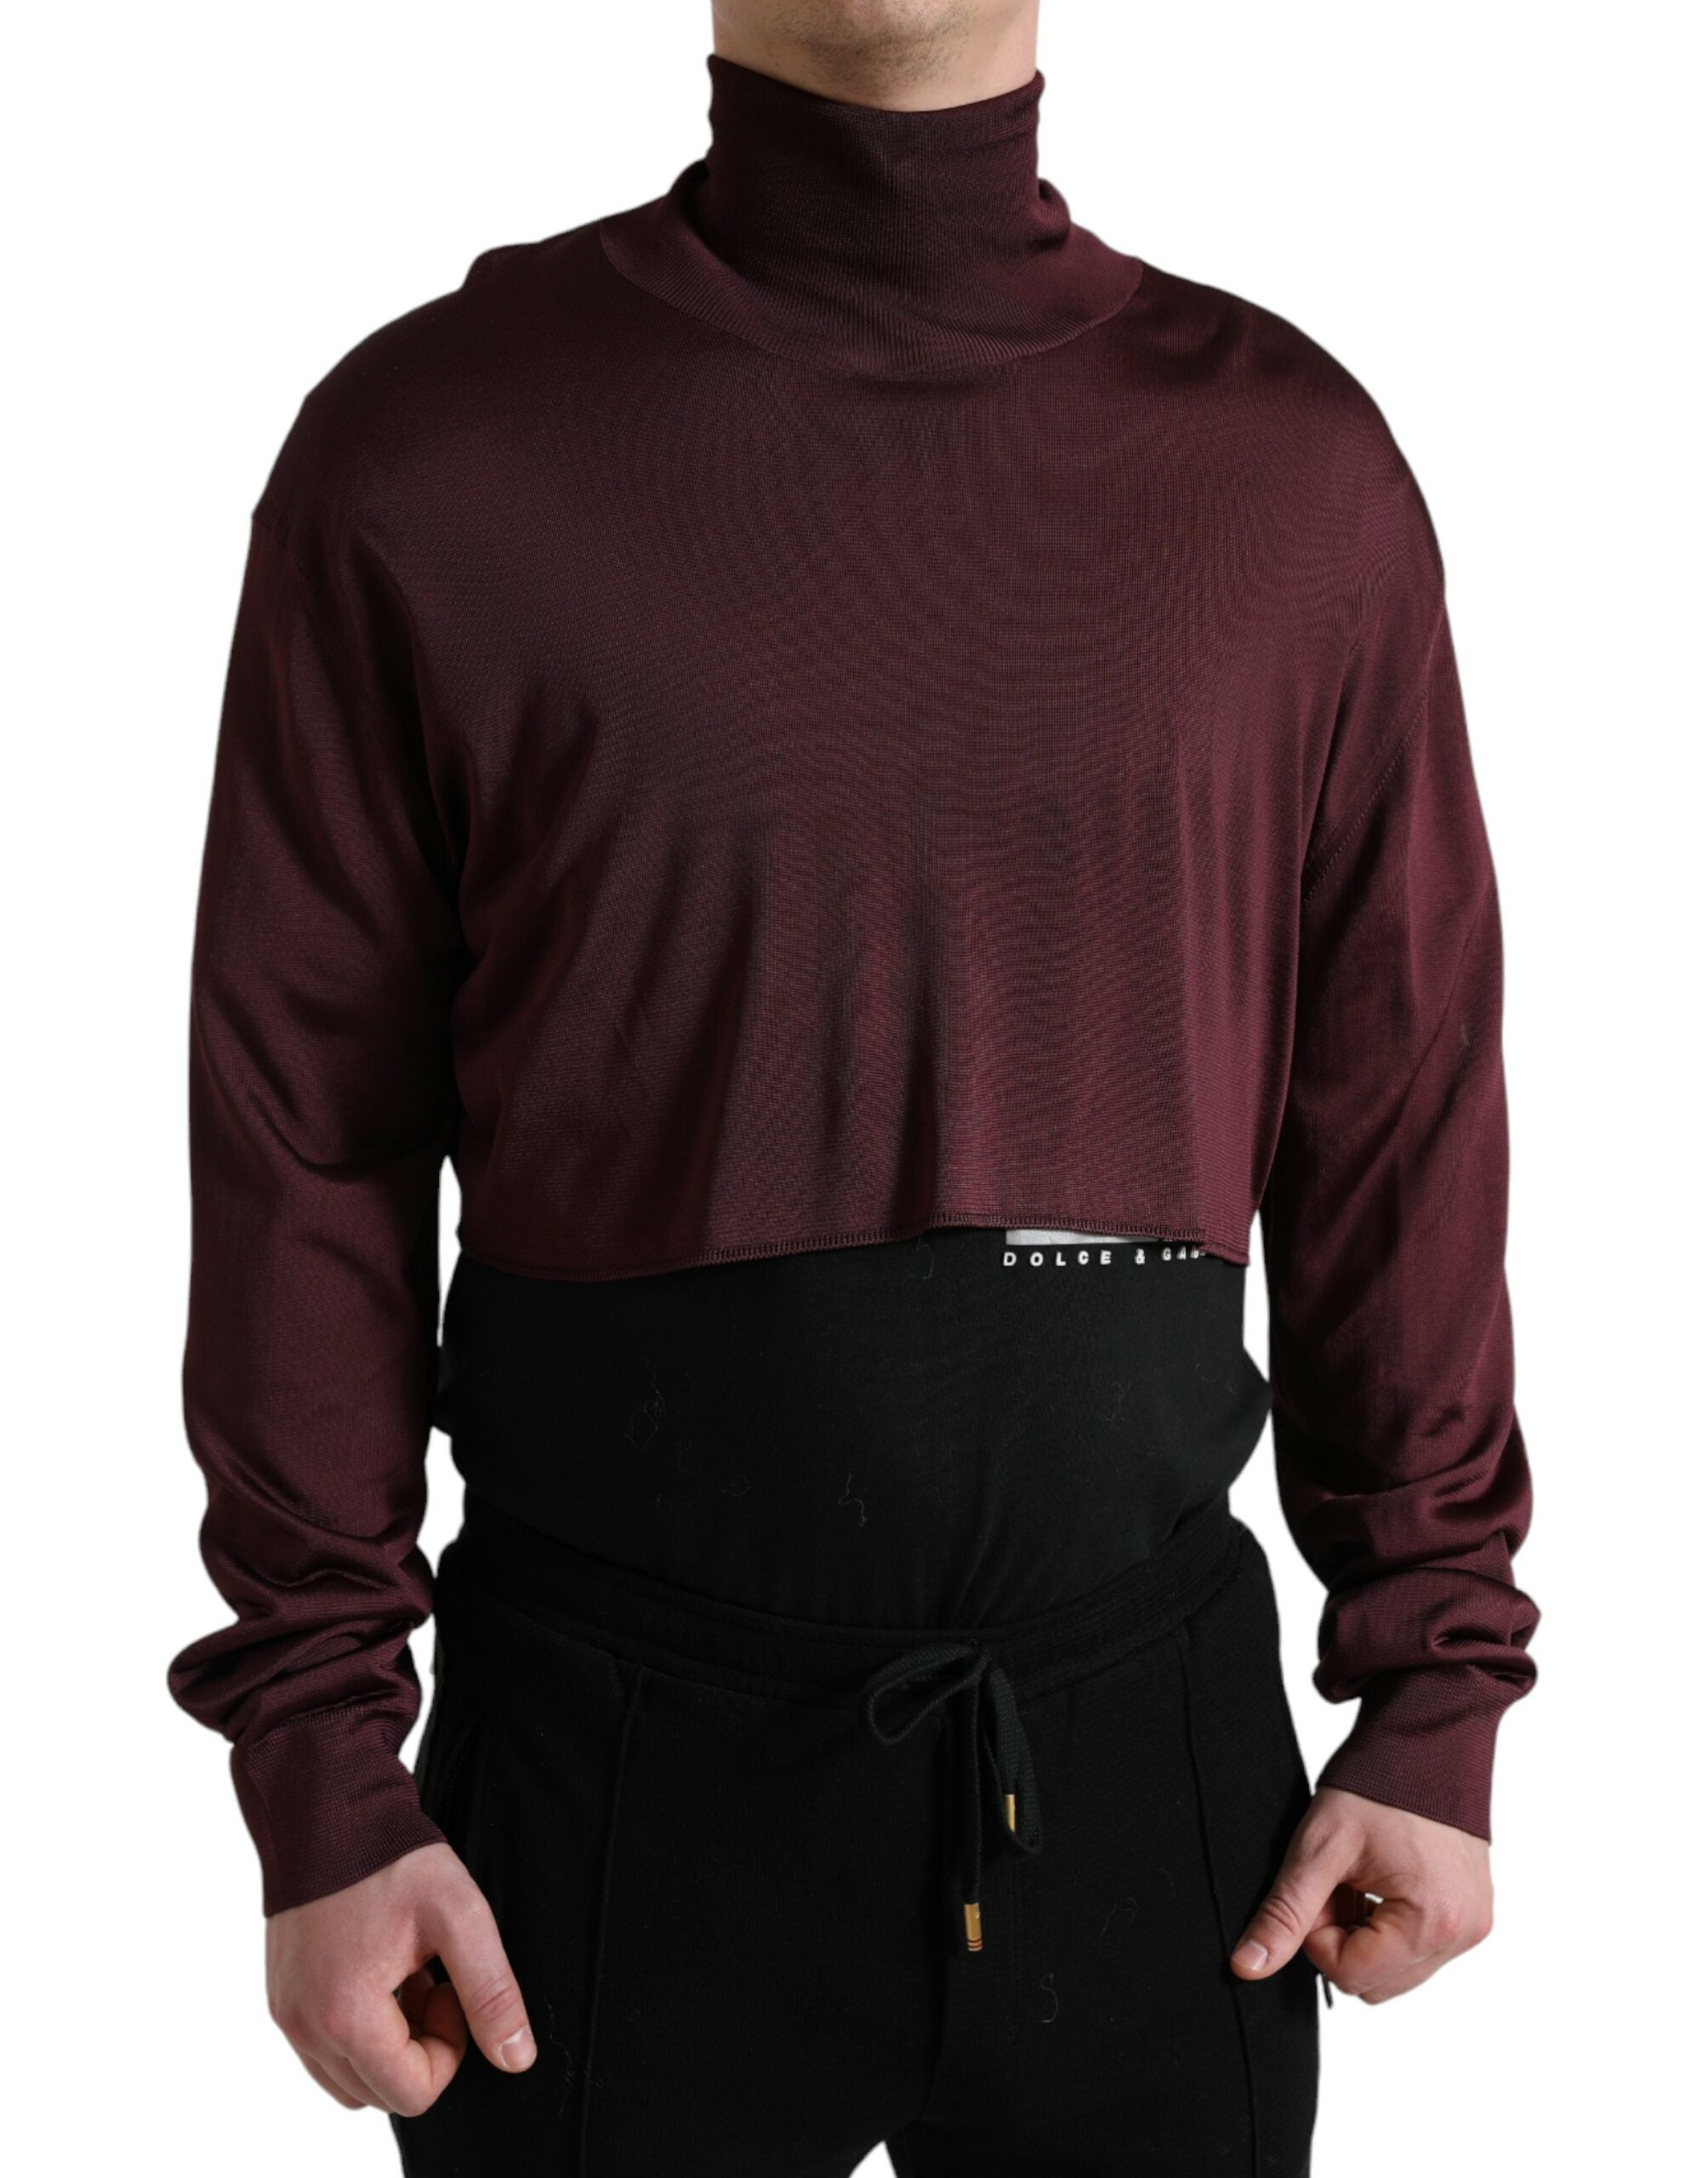 Dolce & Gabbana Brun Pullover Sweater